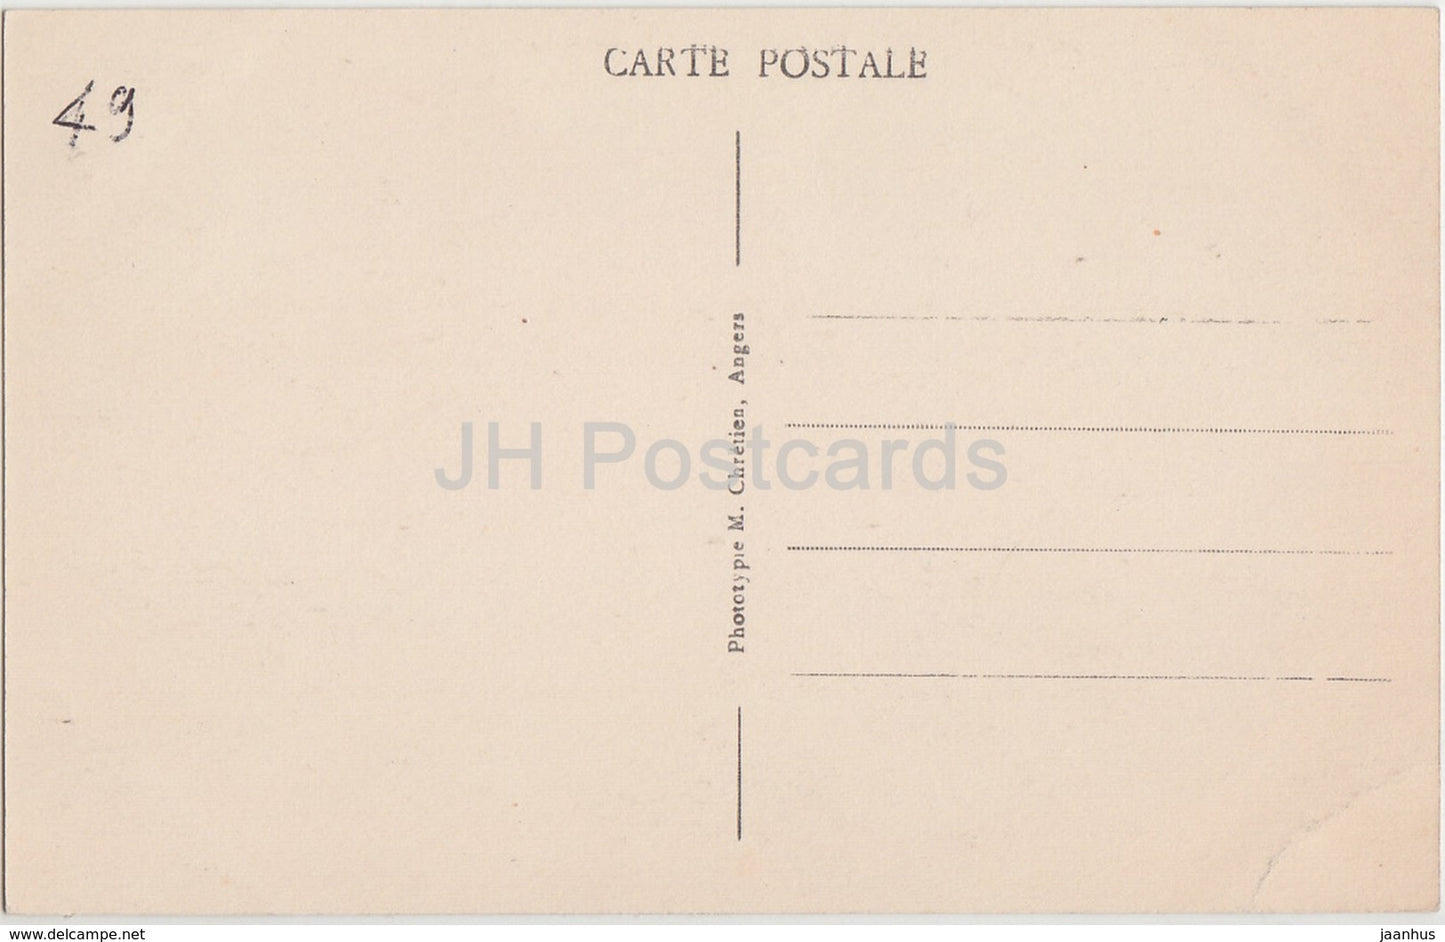 Angers - Le Chateau feodal modernize - par se douves fleuries - Schloss - 20 - alte Postkarte - Frankreich - unbenutzt